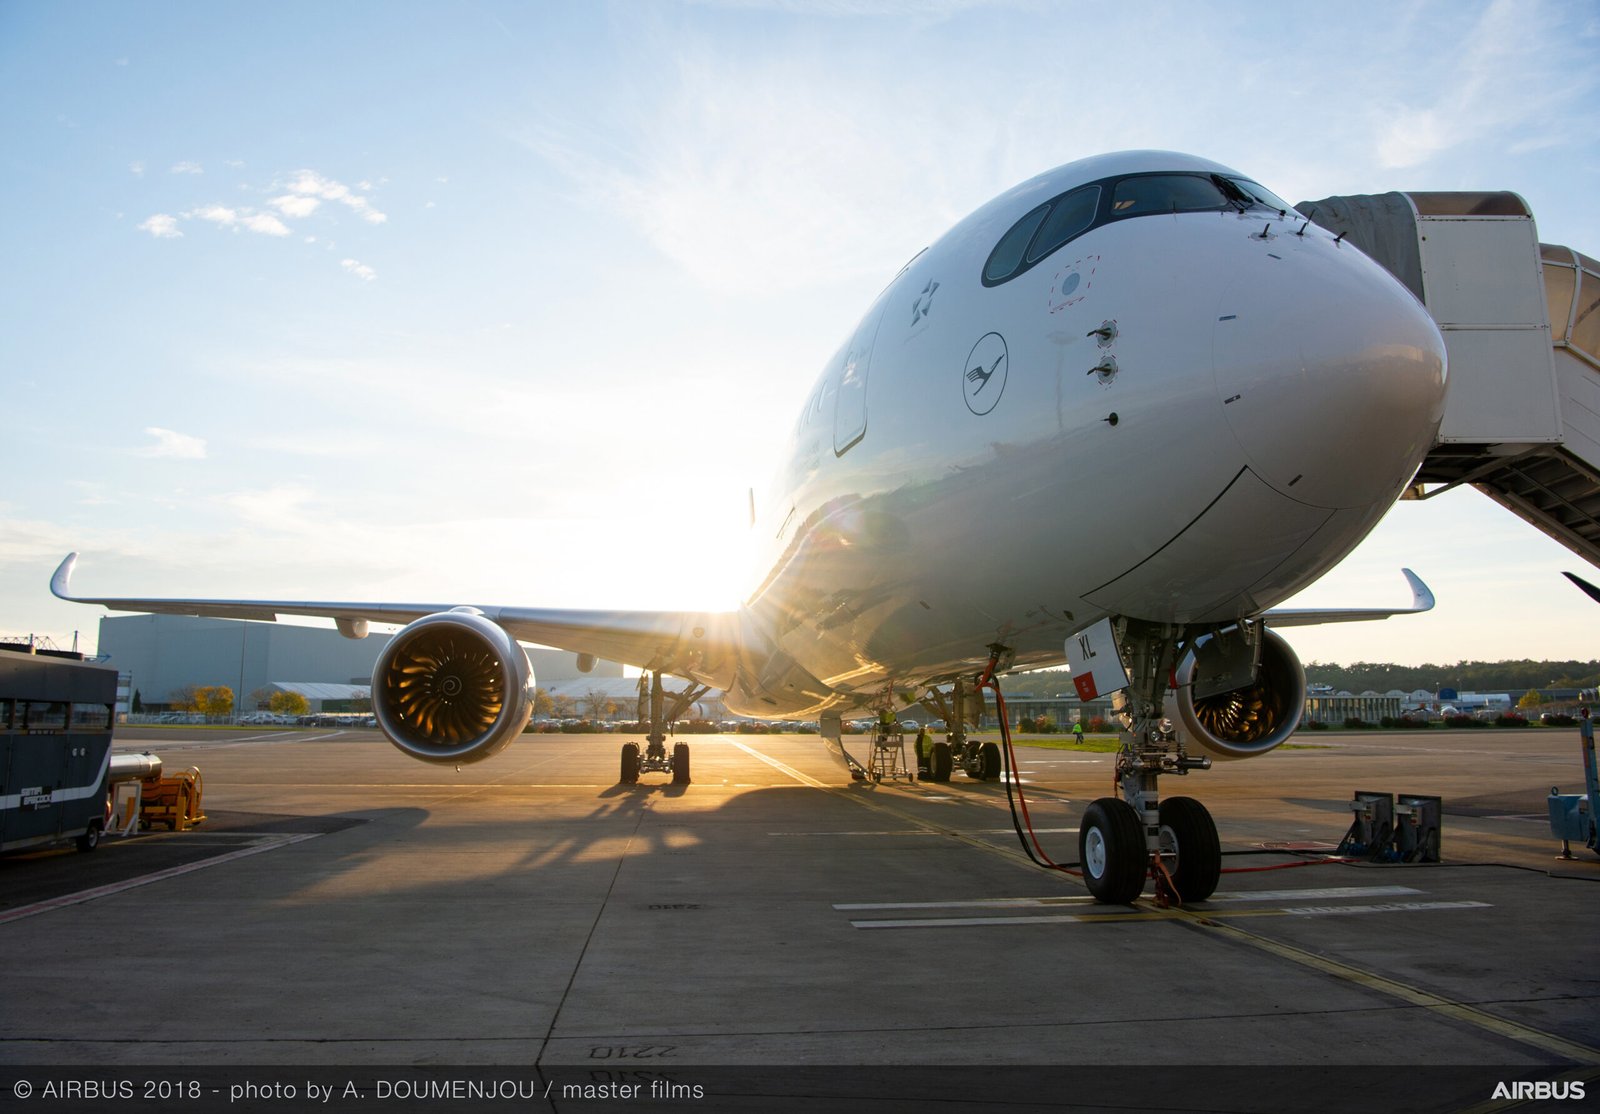 A350 de Lufthansa antes de ser entregado. Foto: Airbus